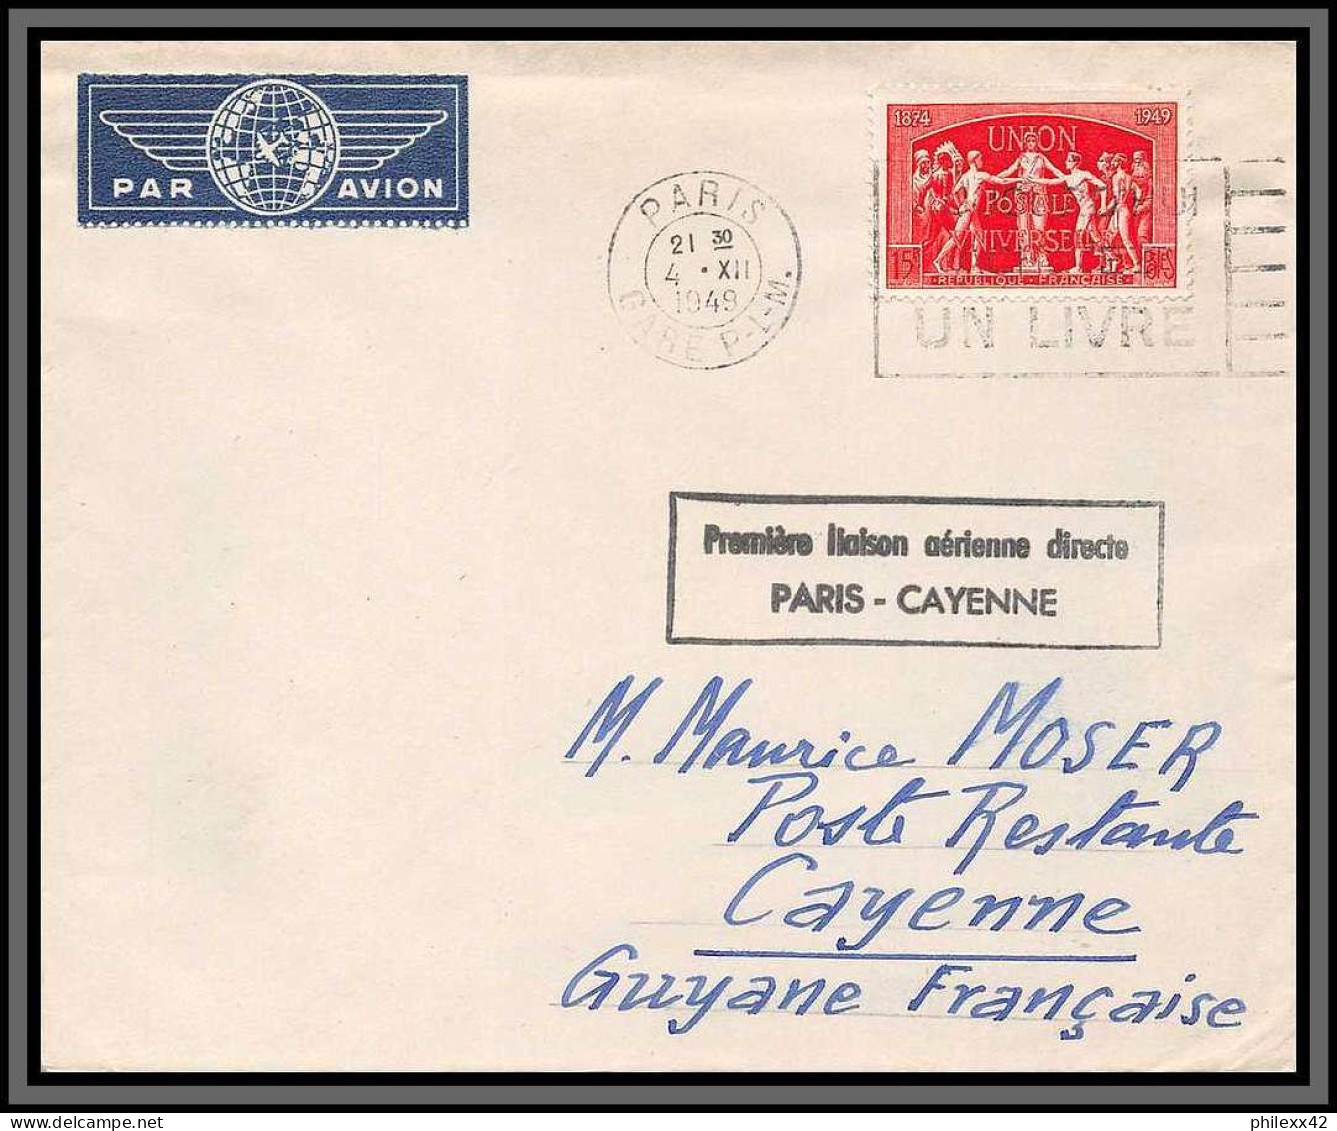 10192 N°851 UPU 1ère Liaison Aerienne Directe Paris Cayenne 4/12/1949 Par Avion Lettre Cover France Aviation  - Primeros Vuelos